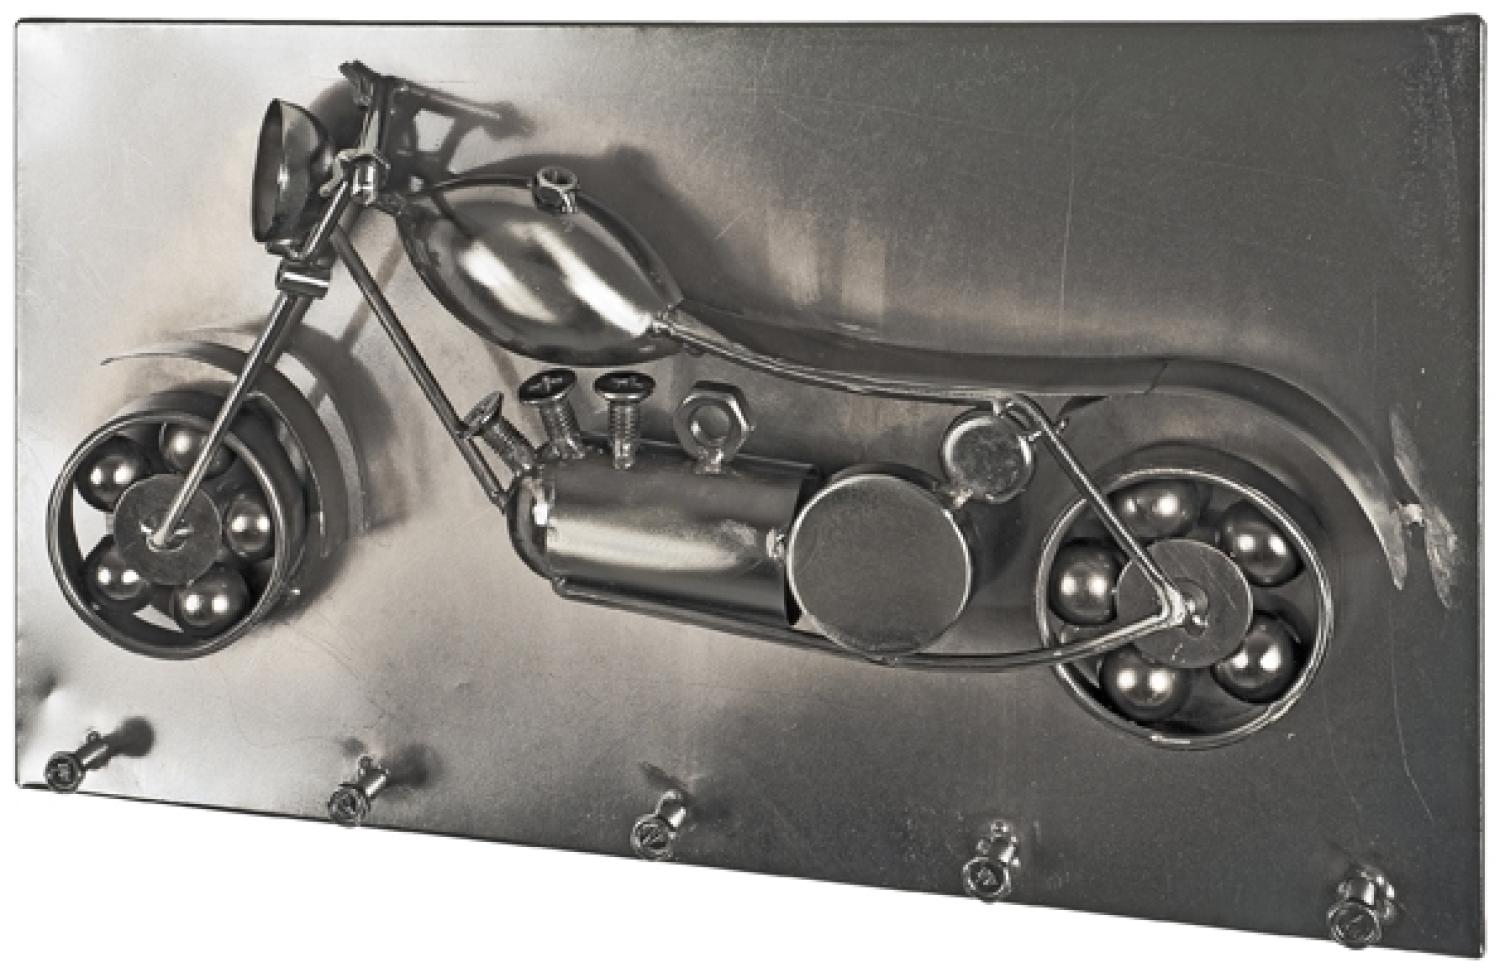 Garderobenhaken >Chopper< in chrom dunkel aus Metall - 35x20x9cm (BxHxT) Bild 1